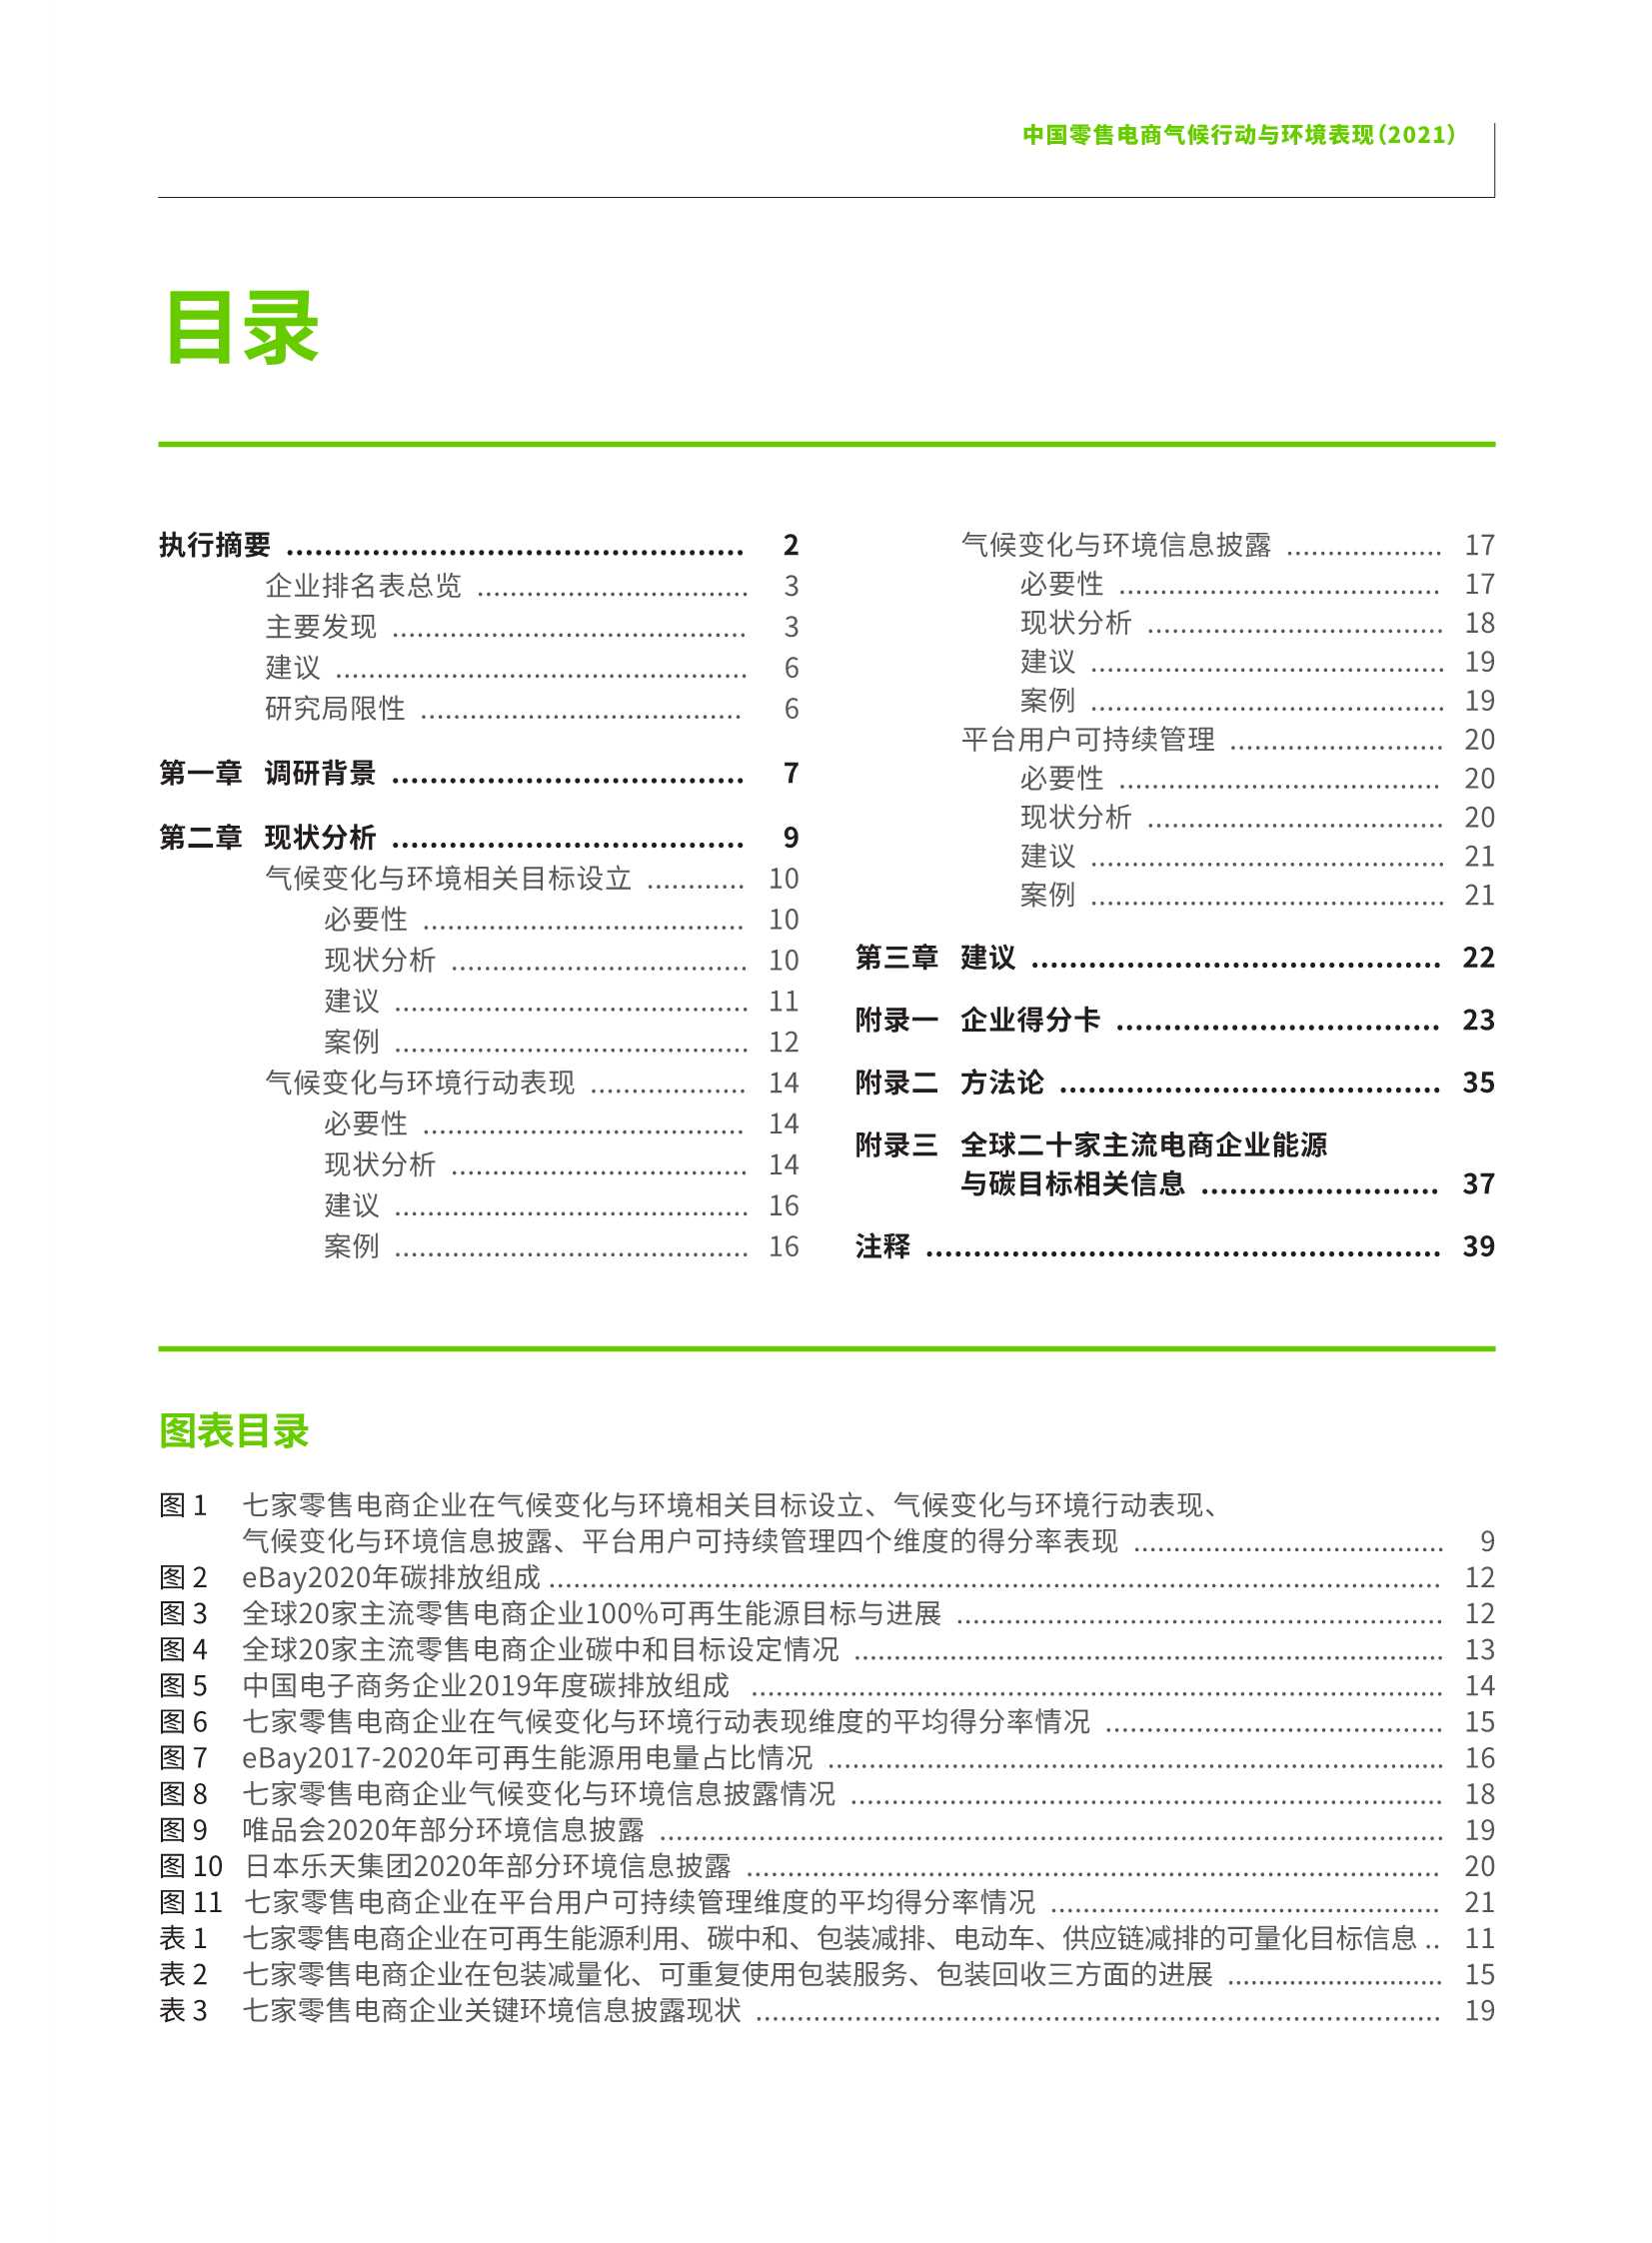 绿色和平-2021中国零售电商气候行动与环境表现-2022.03-44页